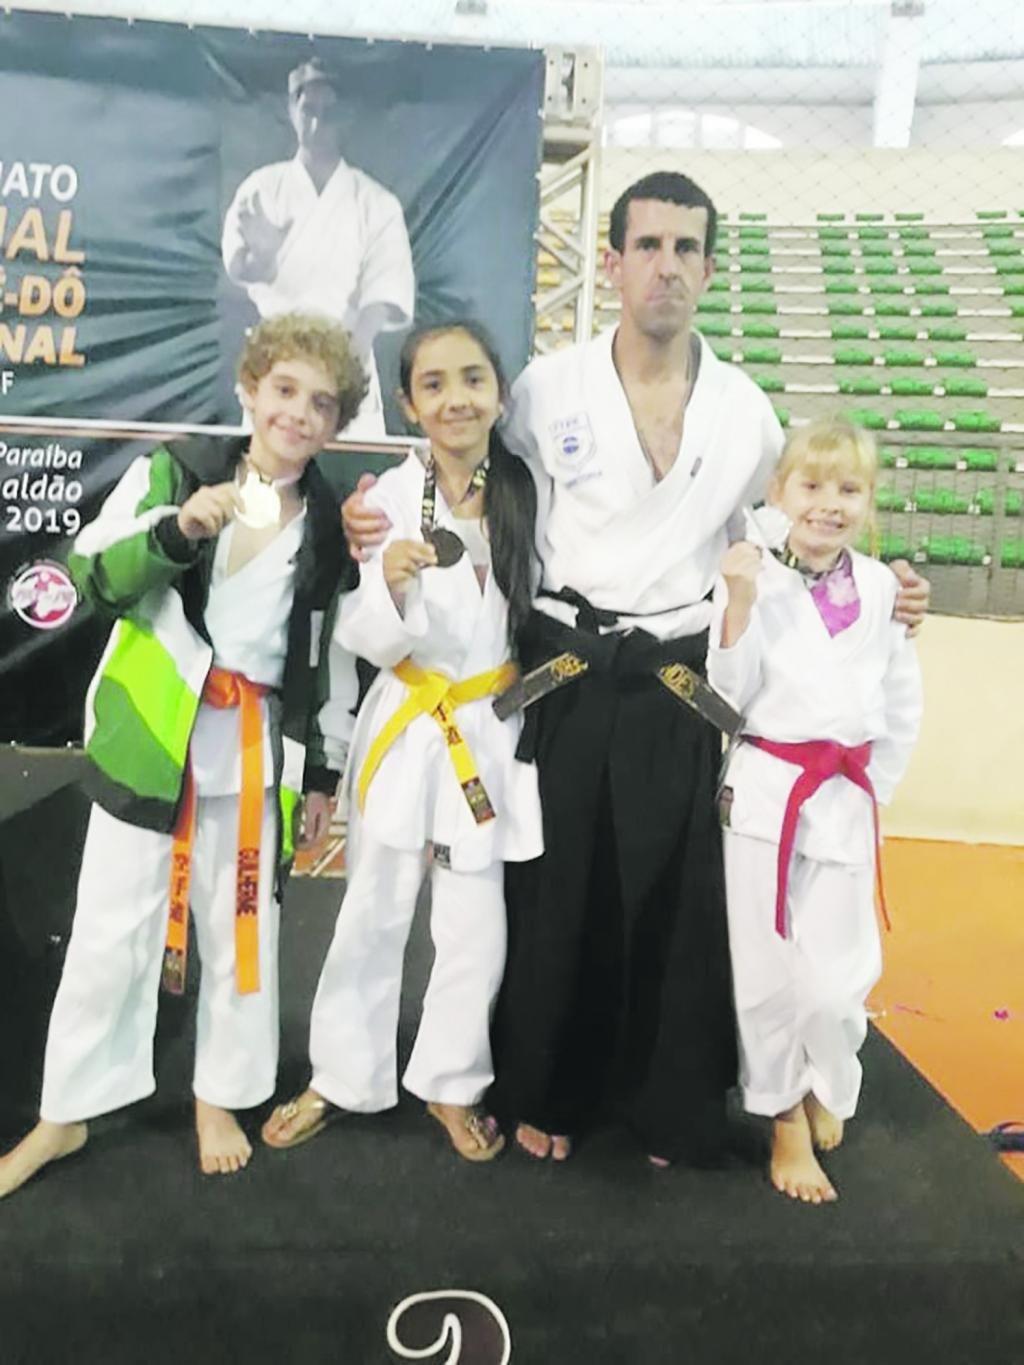 https://jornalnoroeste.com/uploads/images/2019/07/karatecas-de-atalaia-brilham-no-campeonato-brasileiro-e-se-classificam-para-o-pan-americano-bg-1049-67a3b.jpg